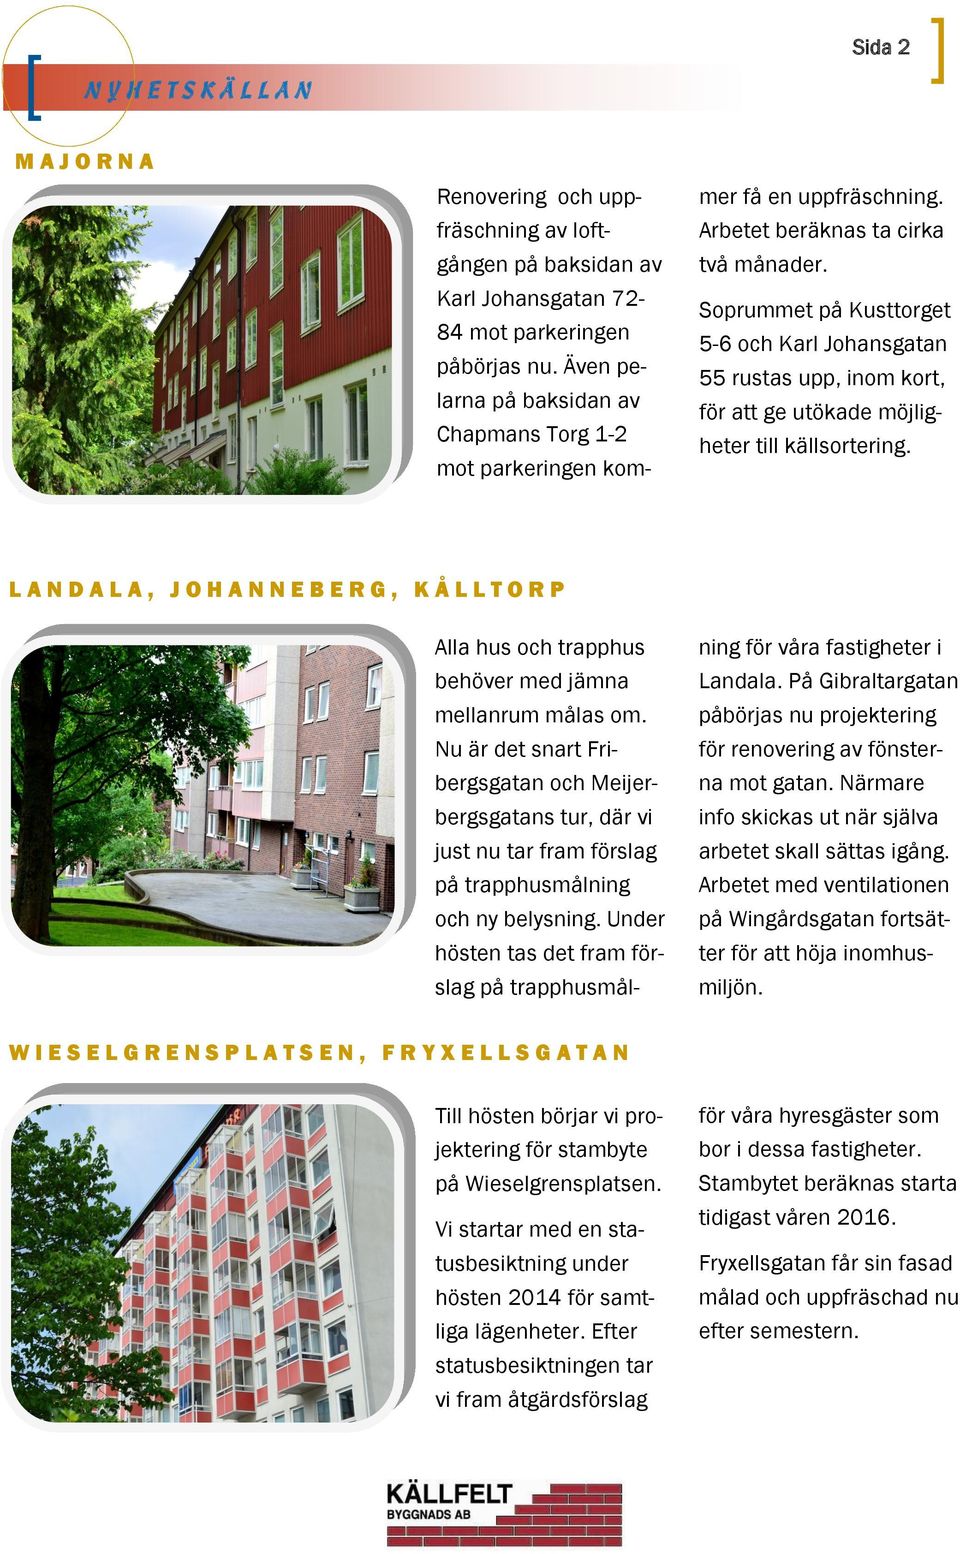 Soprummet på Kusttorget 5-6 och Karl Johansgatan 55 rustas upp, inom kort, för att ge utökade möjligheter till källsortering.